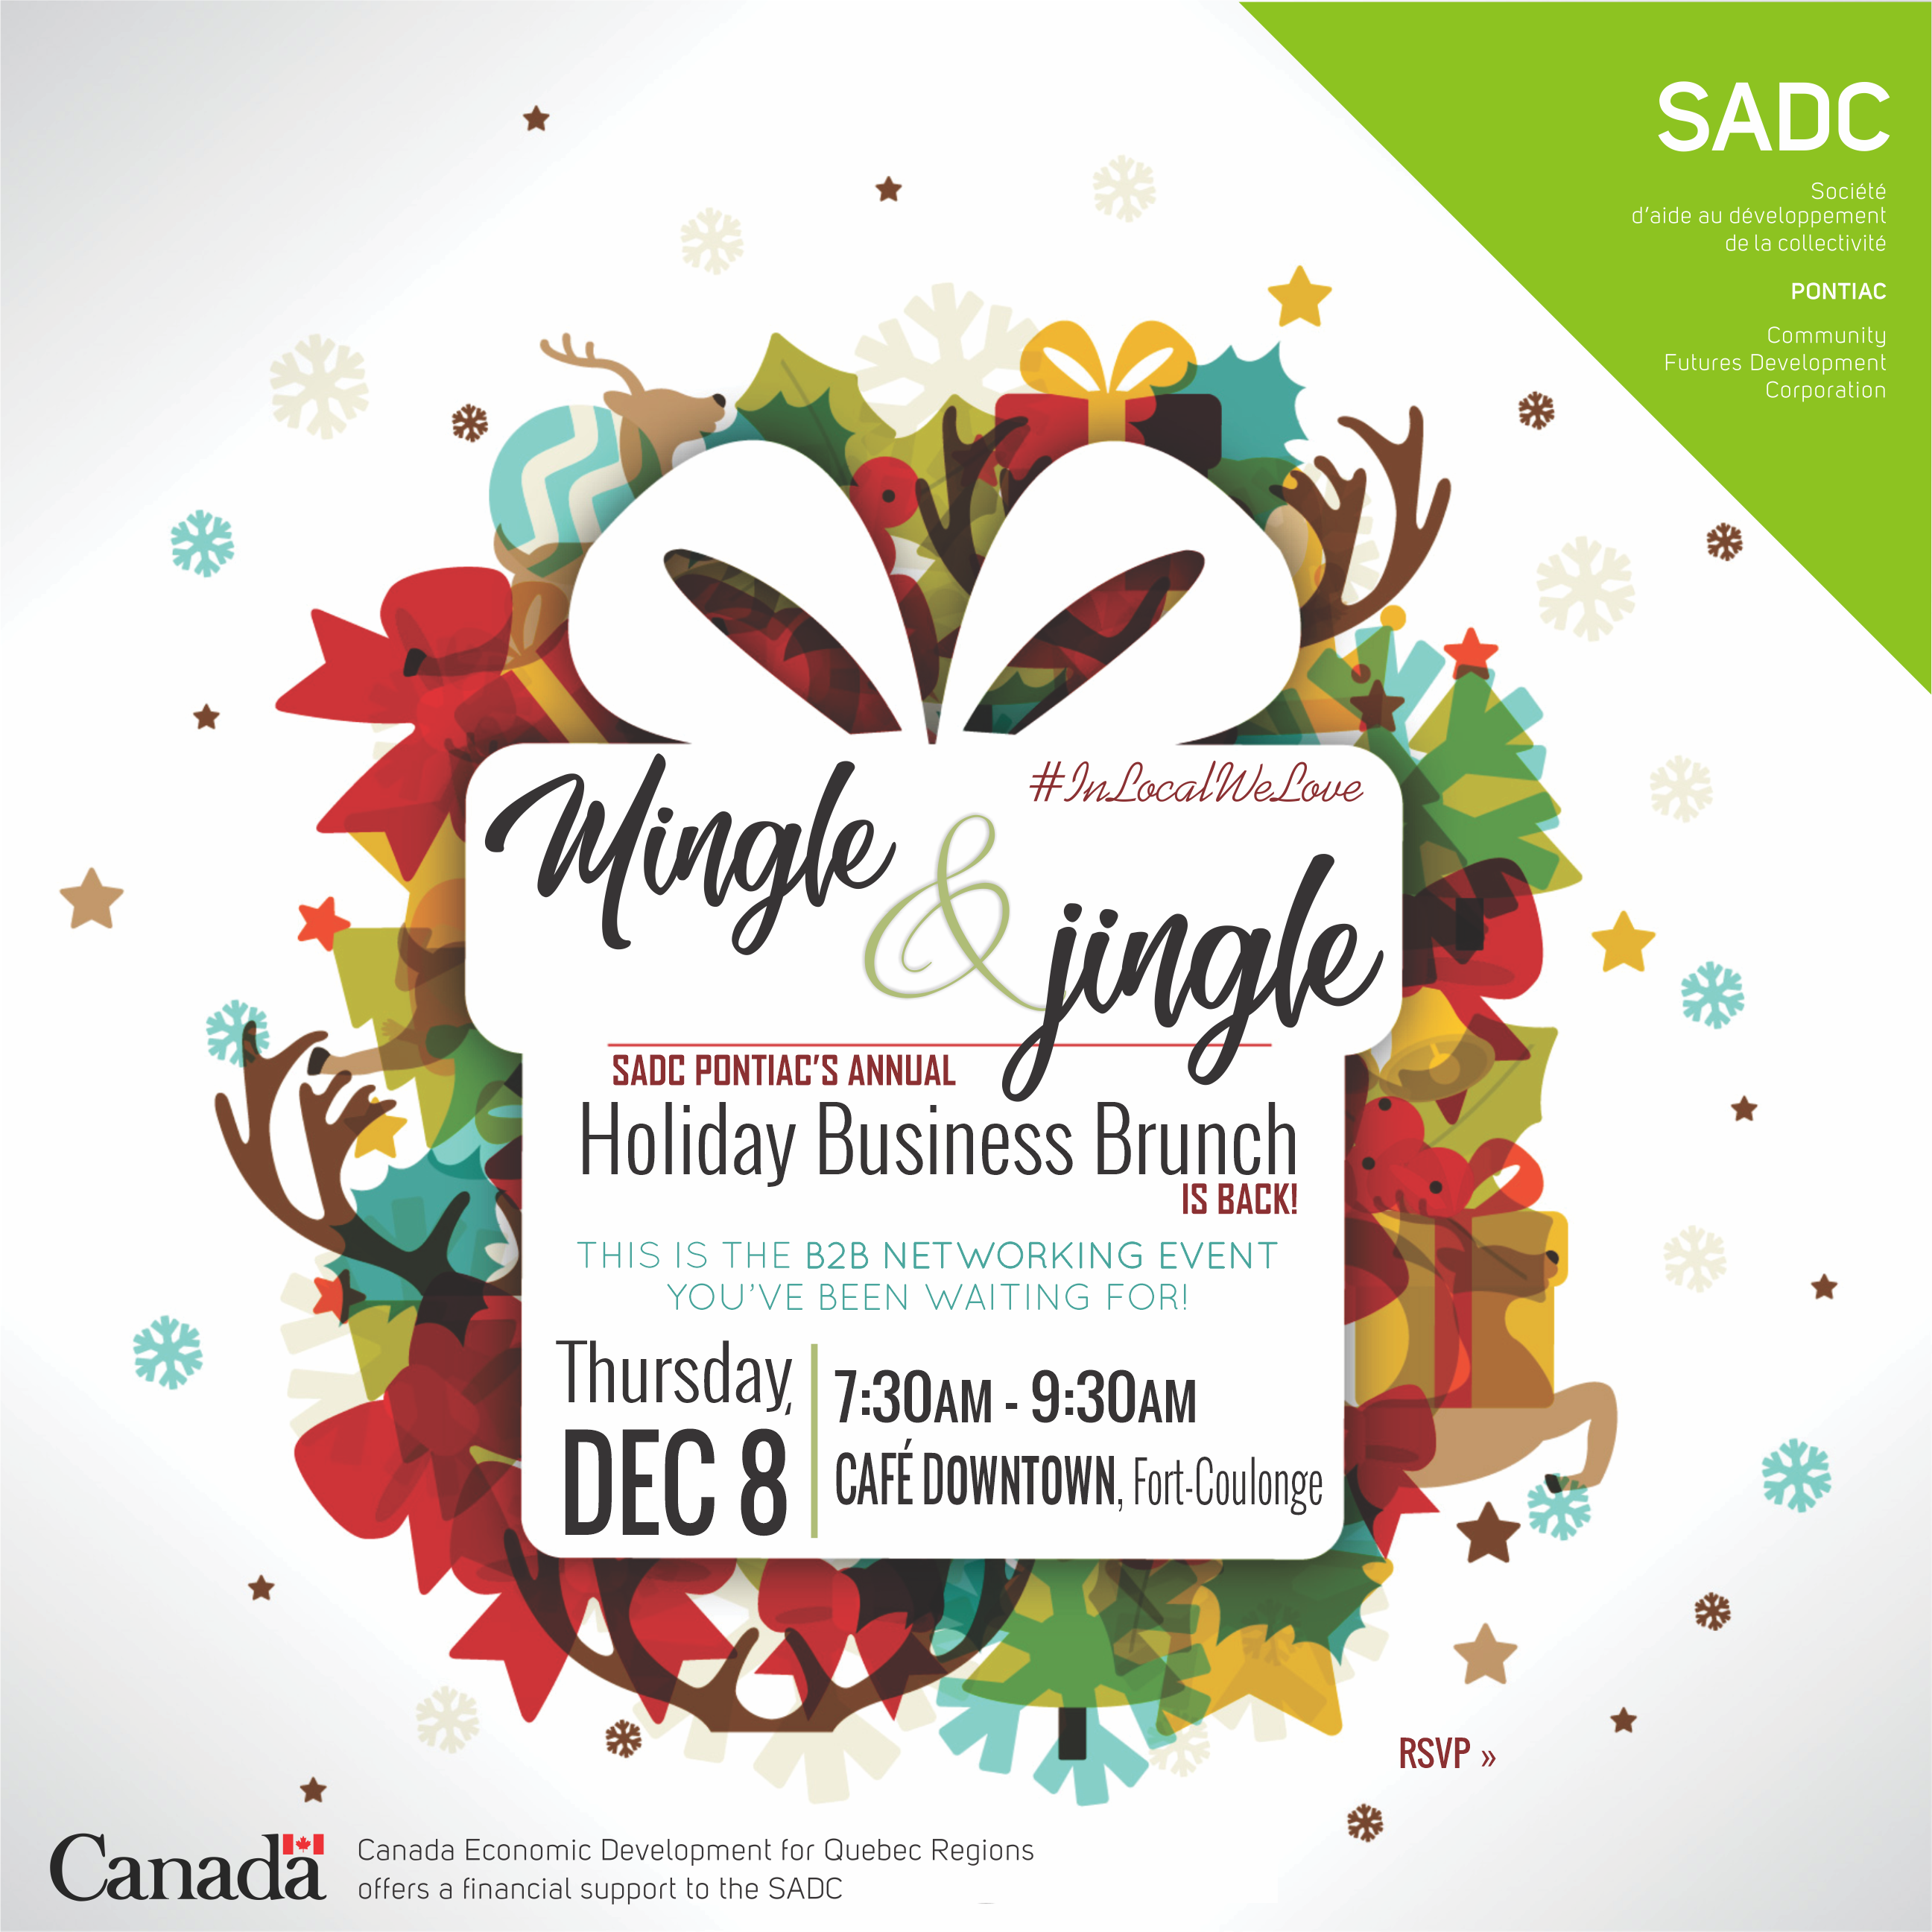 SADC Pontiac – Brunch d’affaires des fêtes – Mingle and Jingle